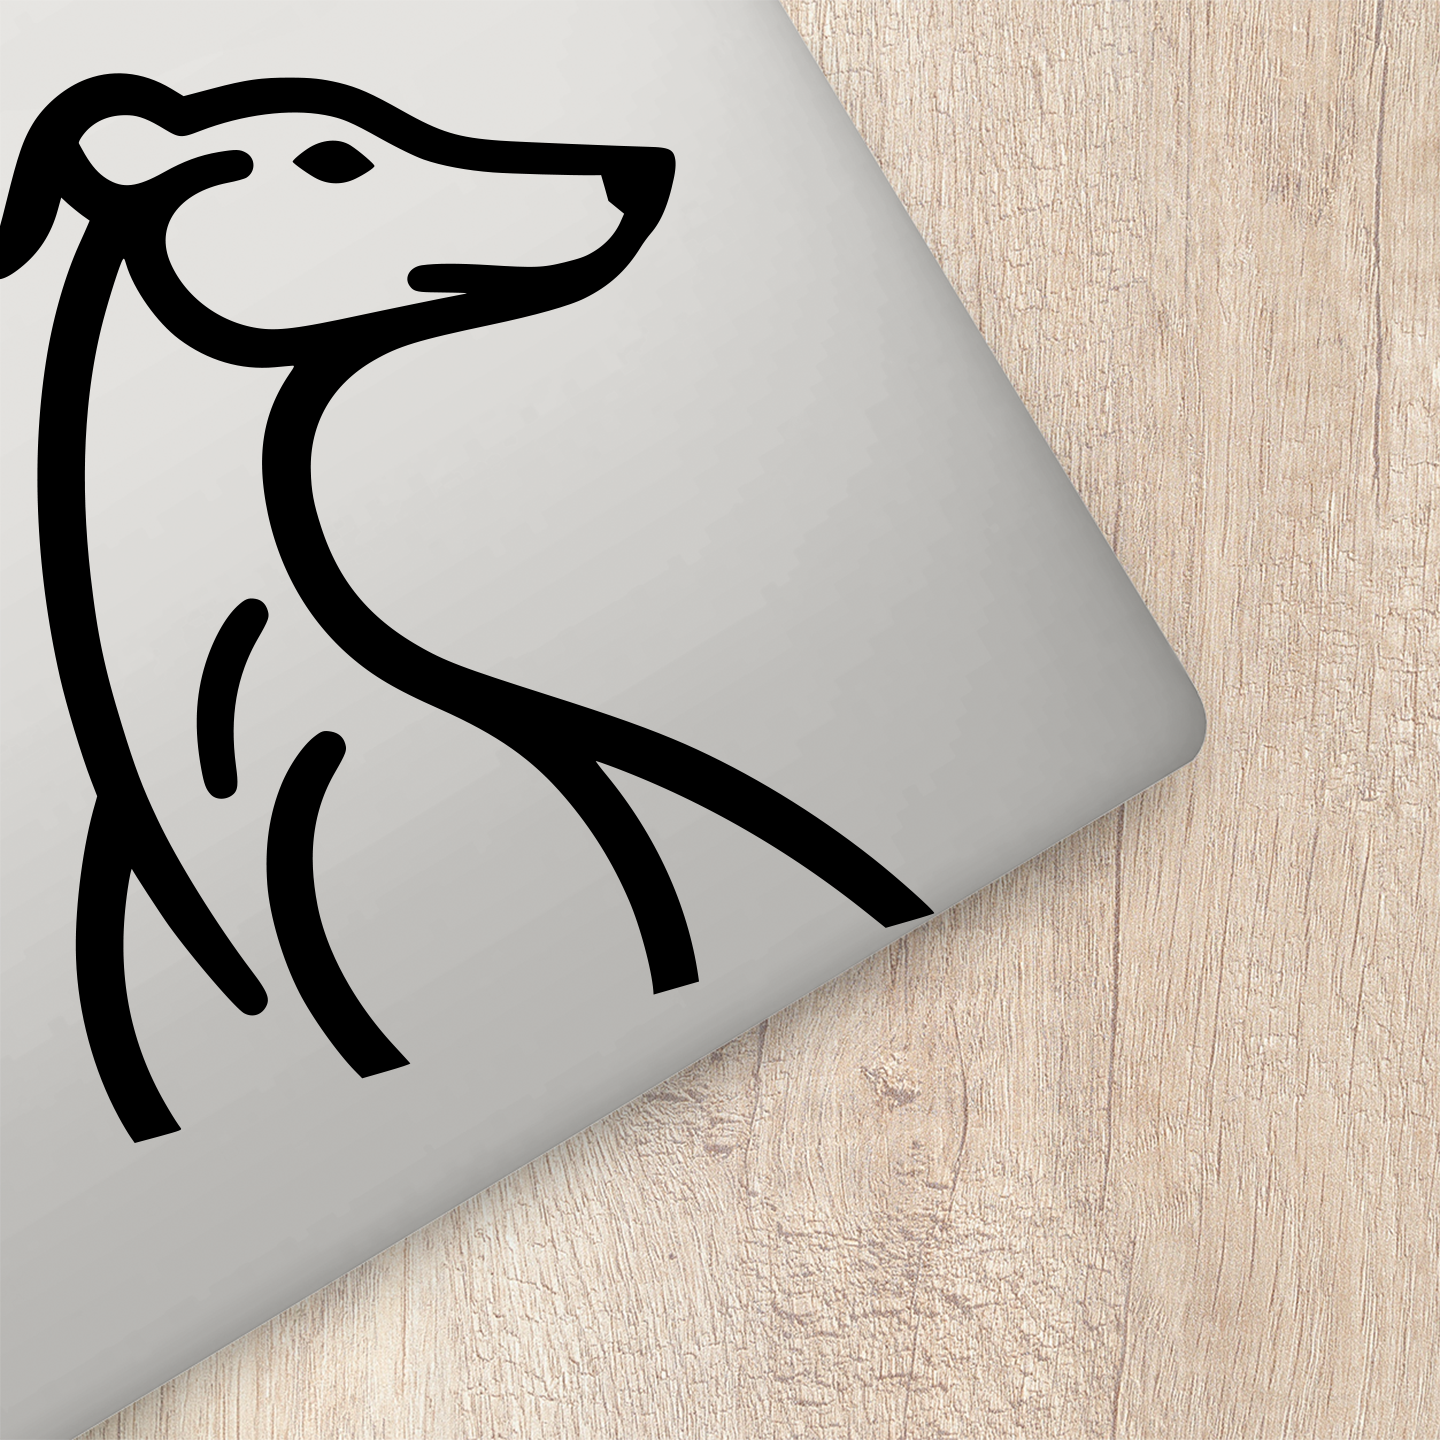 Minimalist Greyhound Profile Sticker